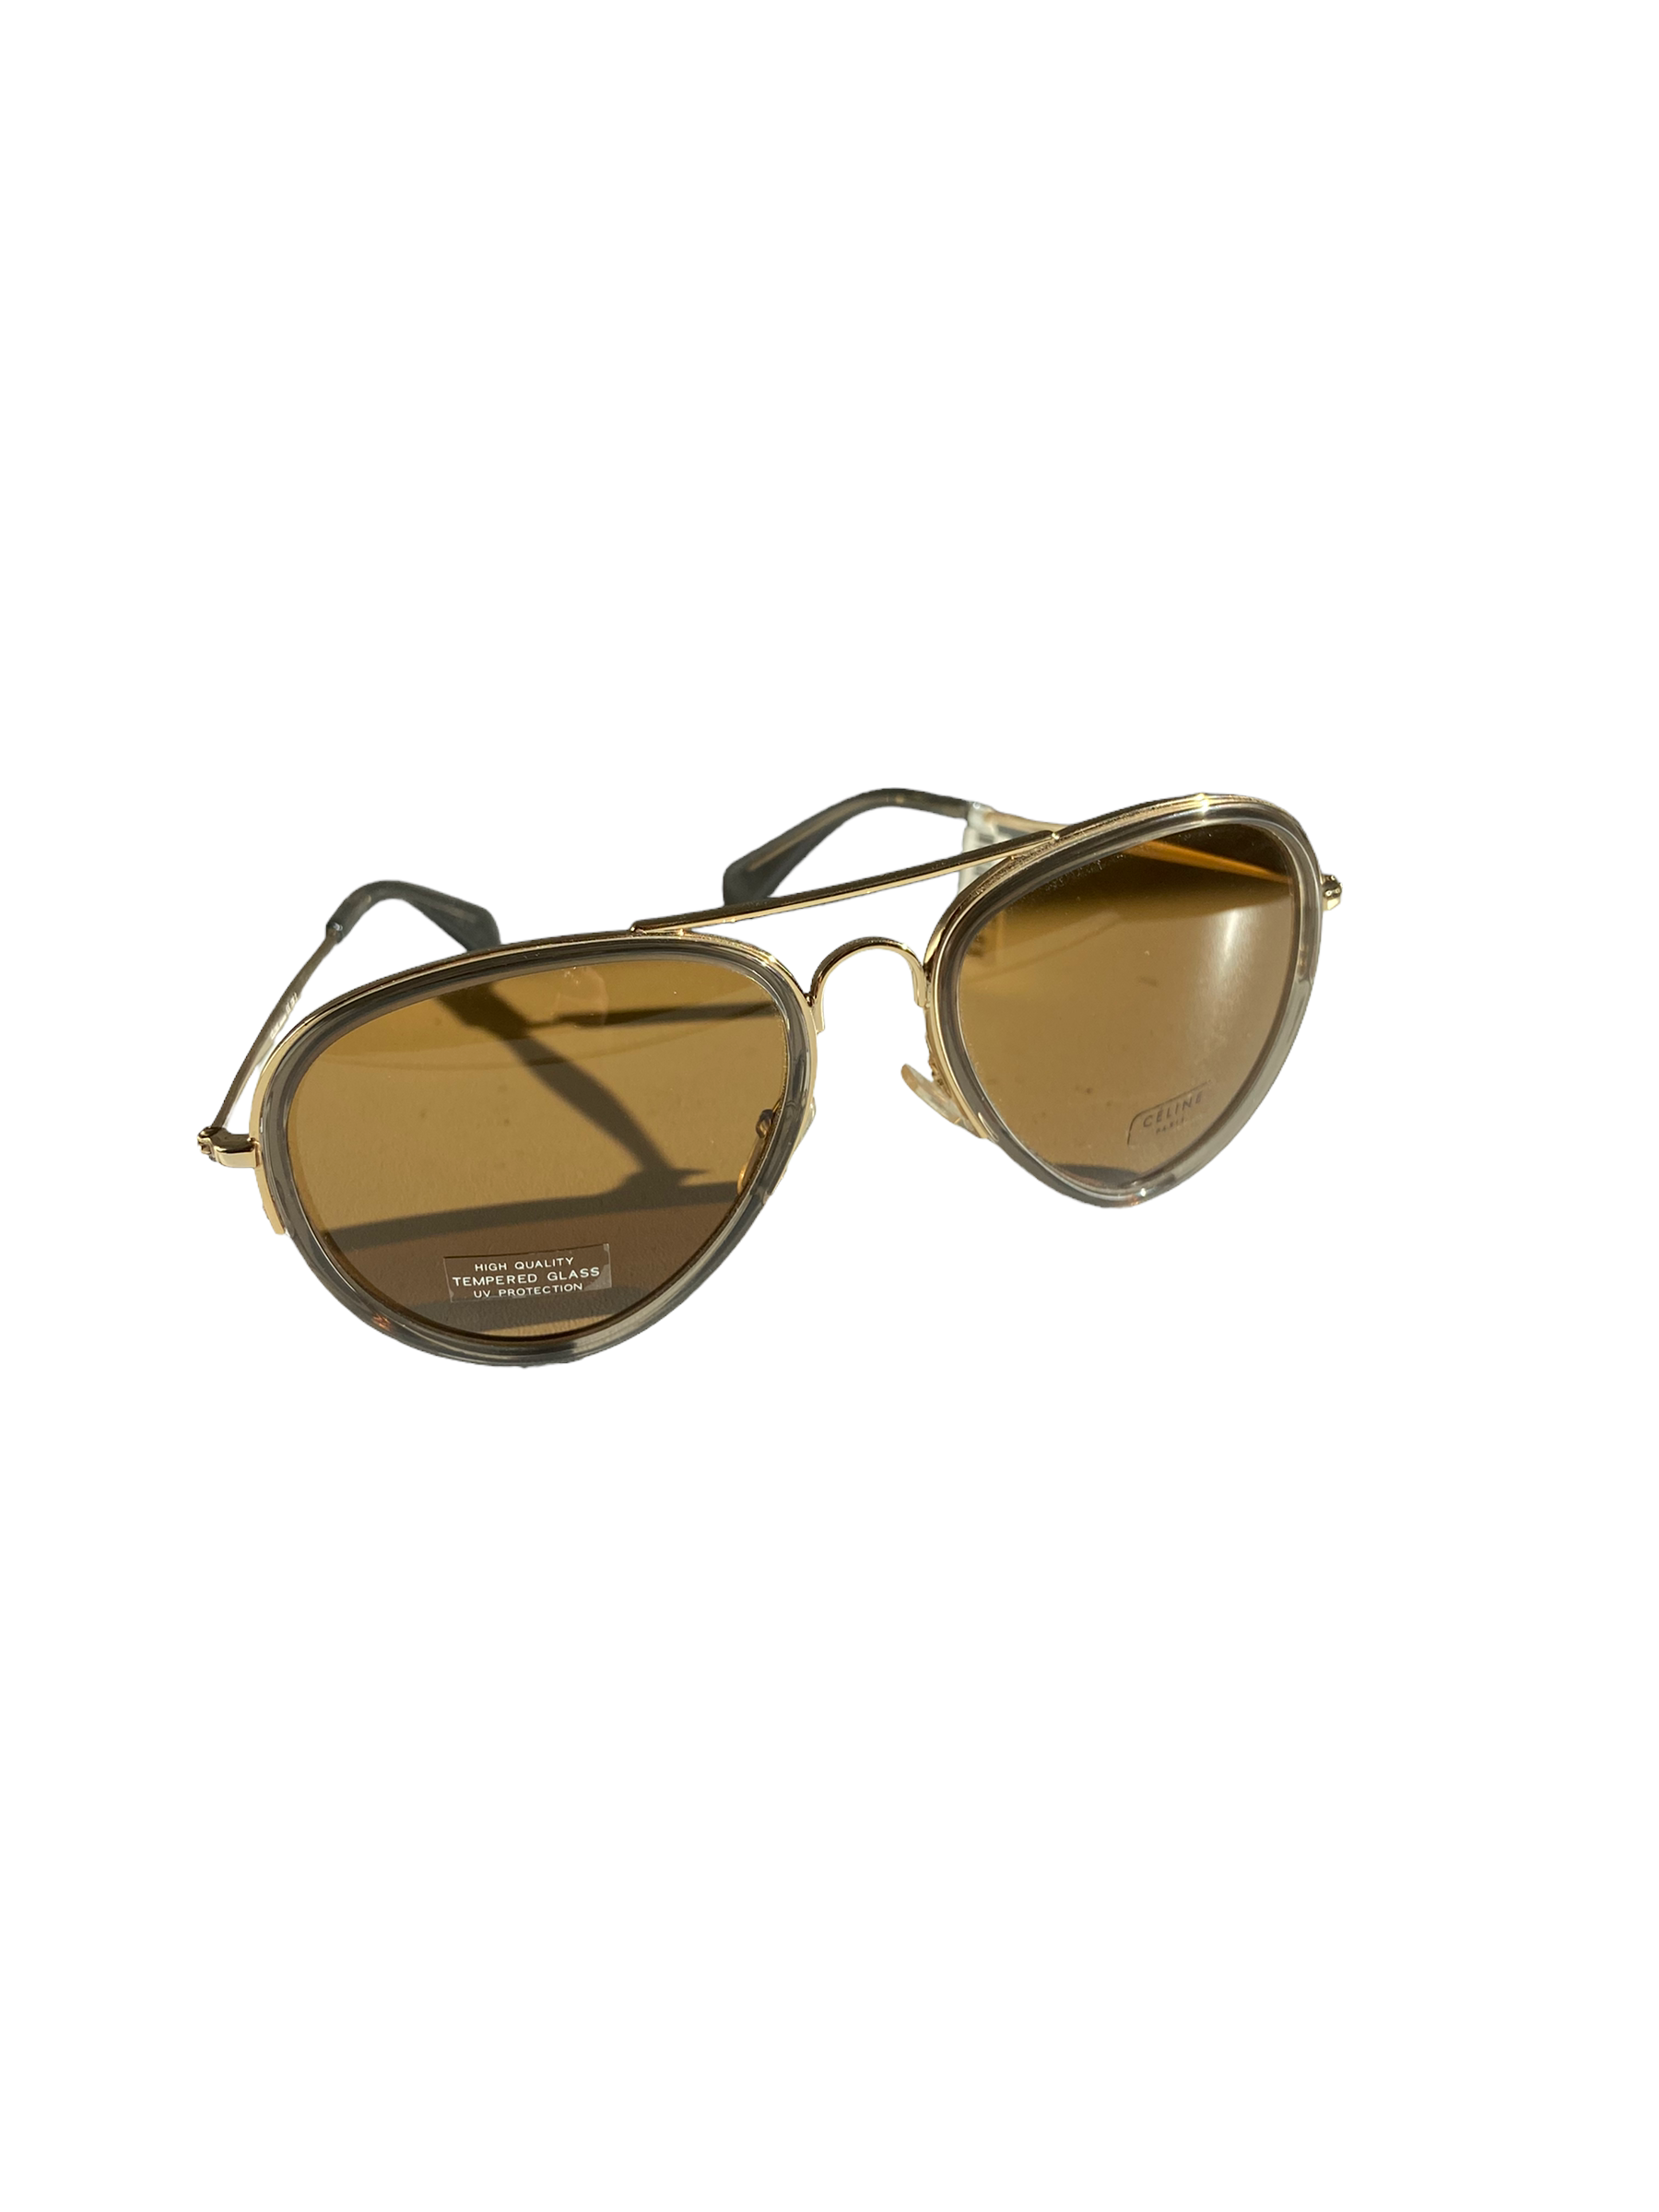 Vintage Céline Pilot Sunglasses